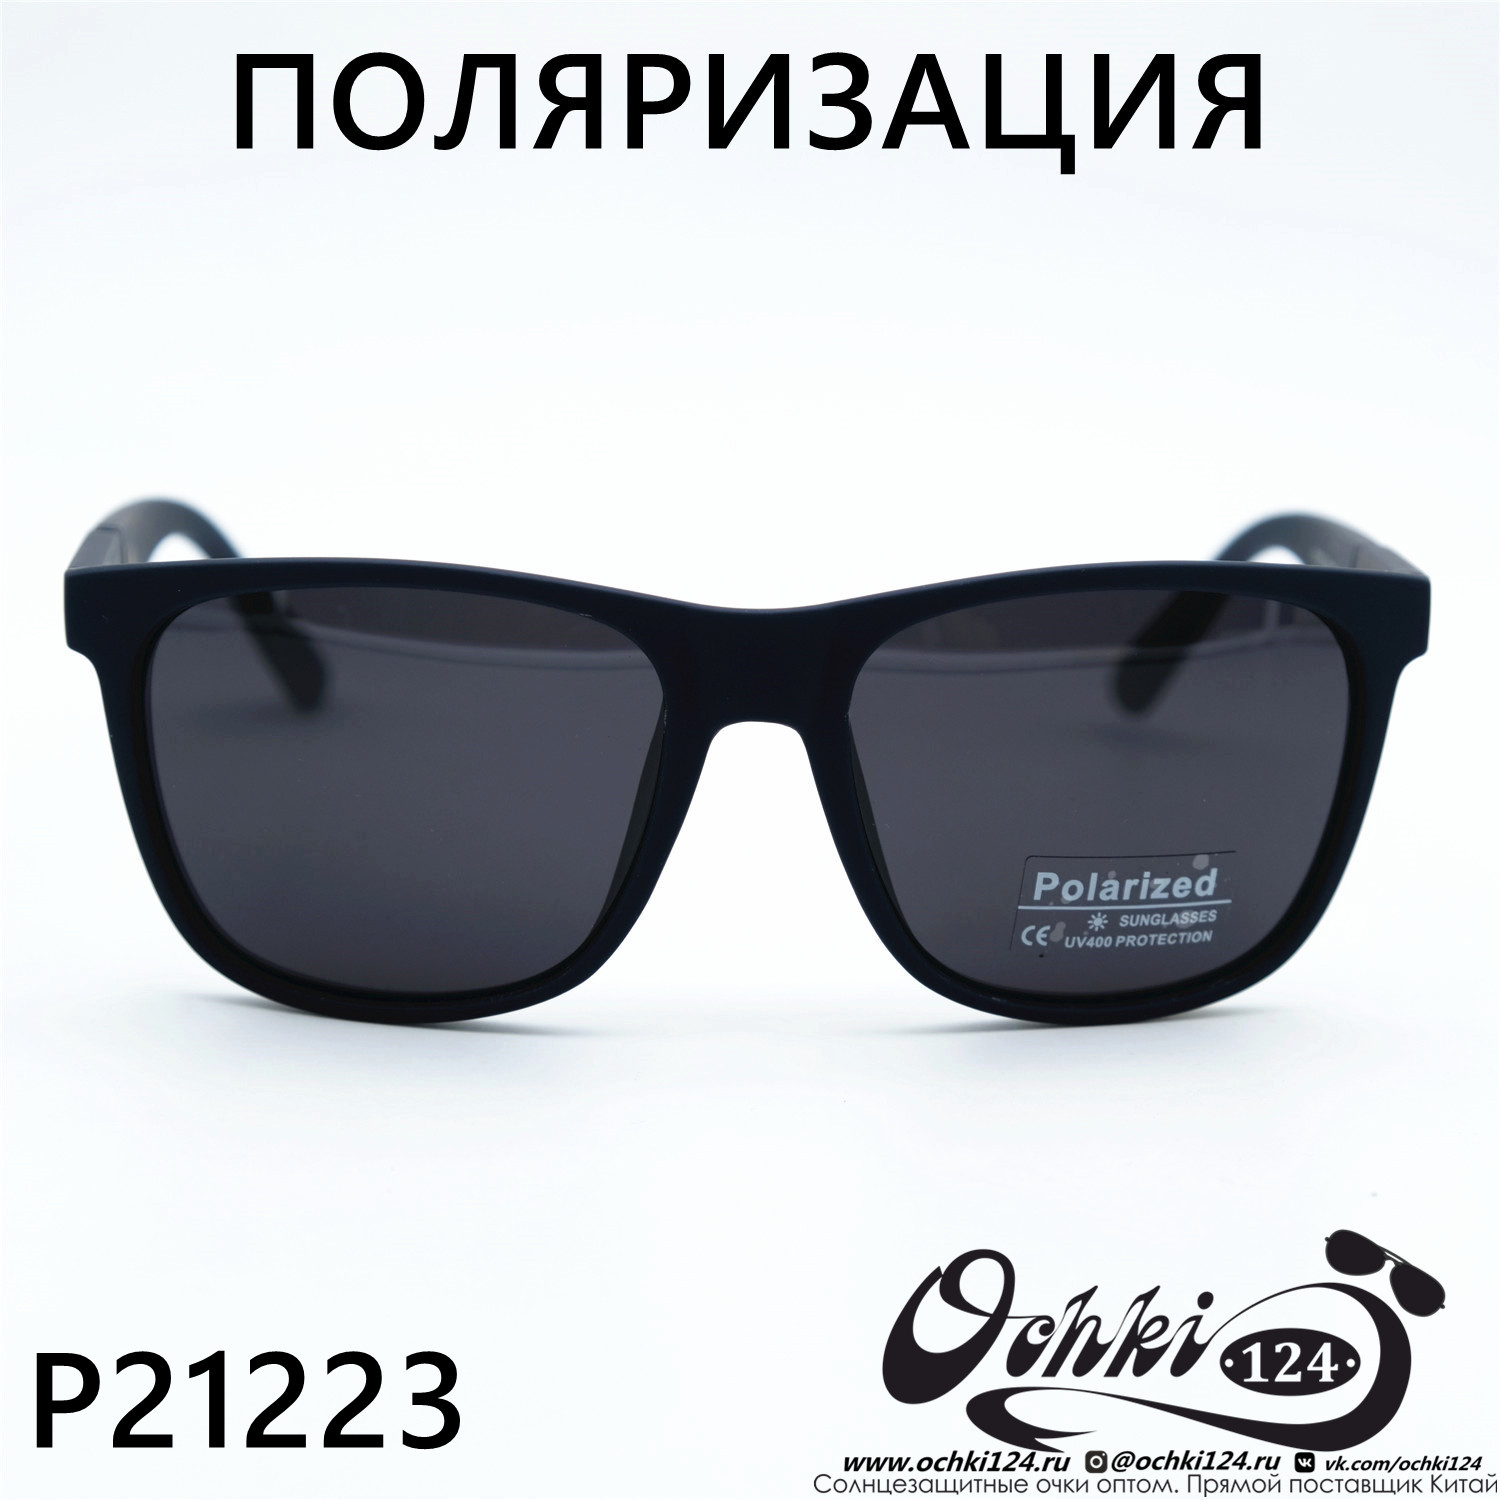  Солнцезащитные очки картинка 2023 Мужские Стандартные Polarized P21223-C4 